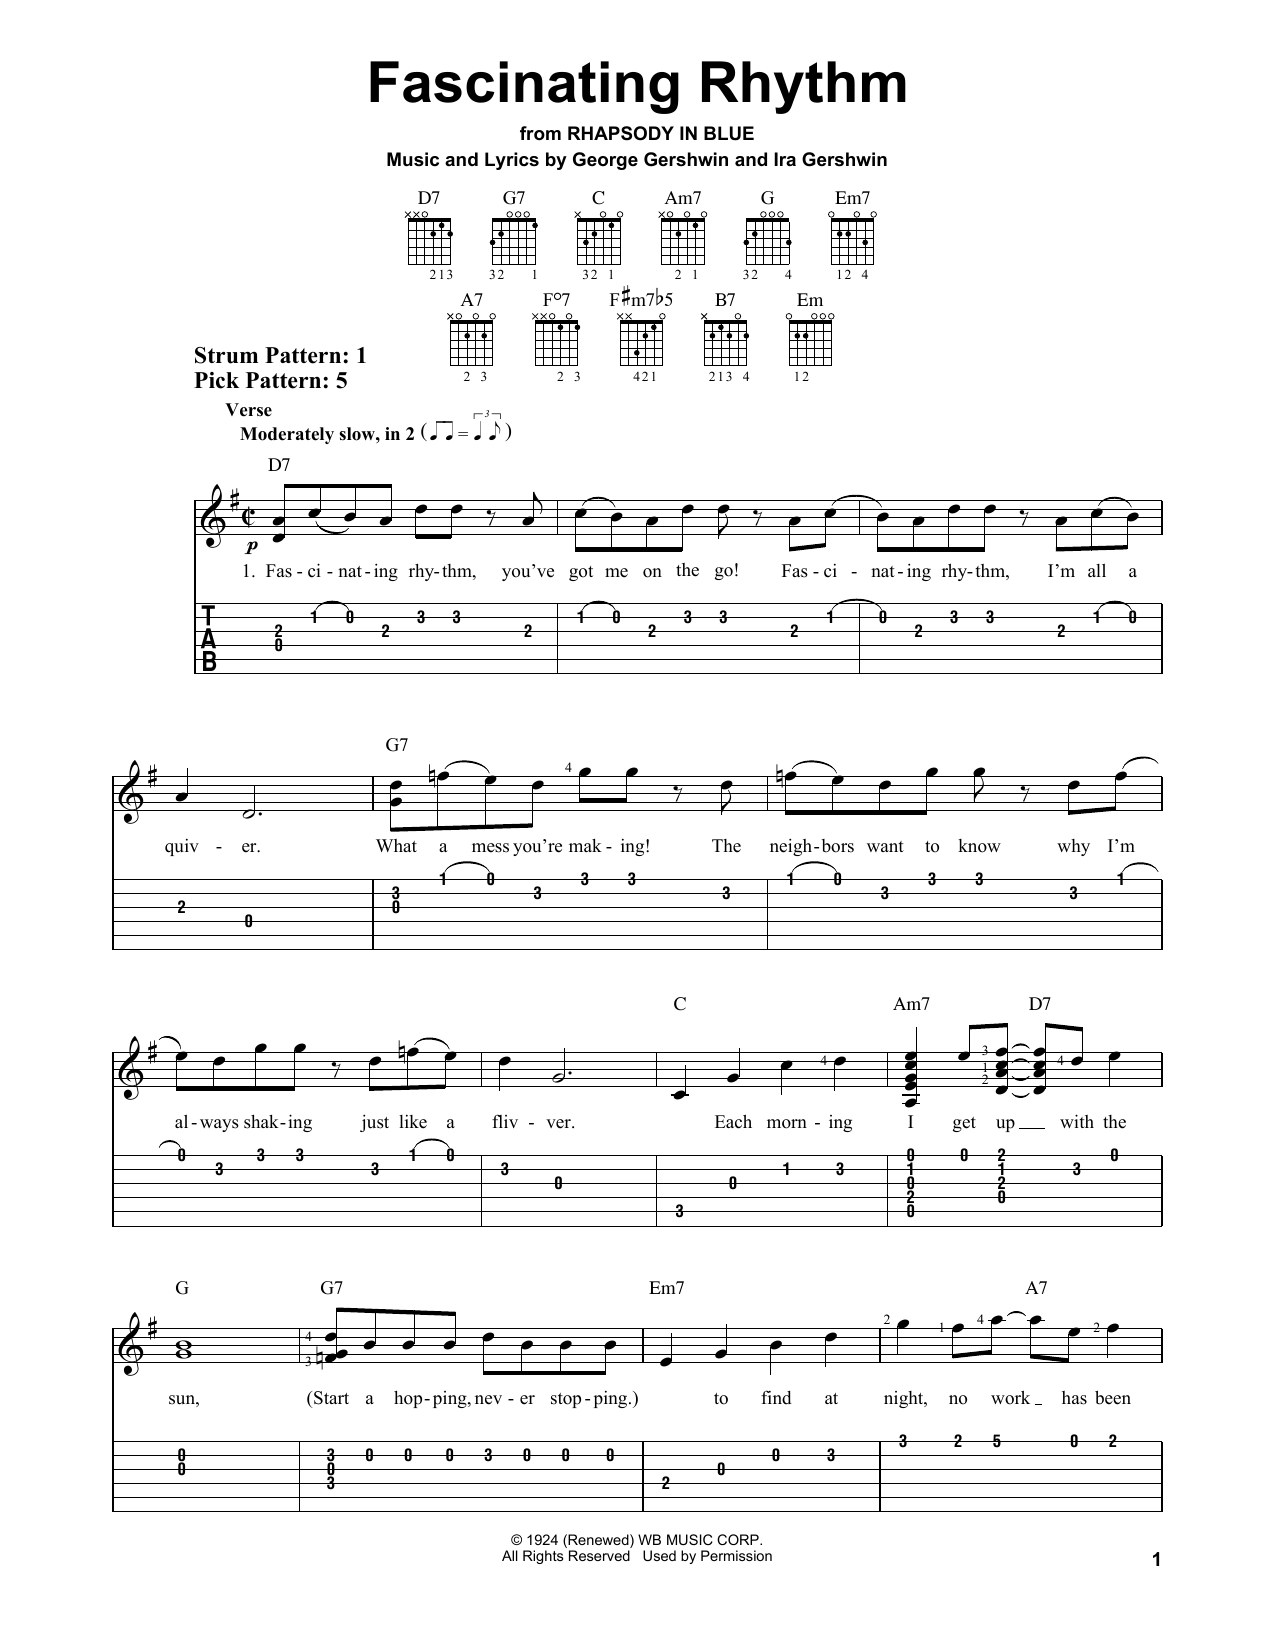 Download George Gershwin Fascinating Rhythm Sheet Music